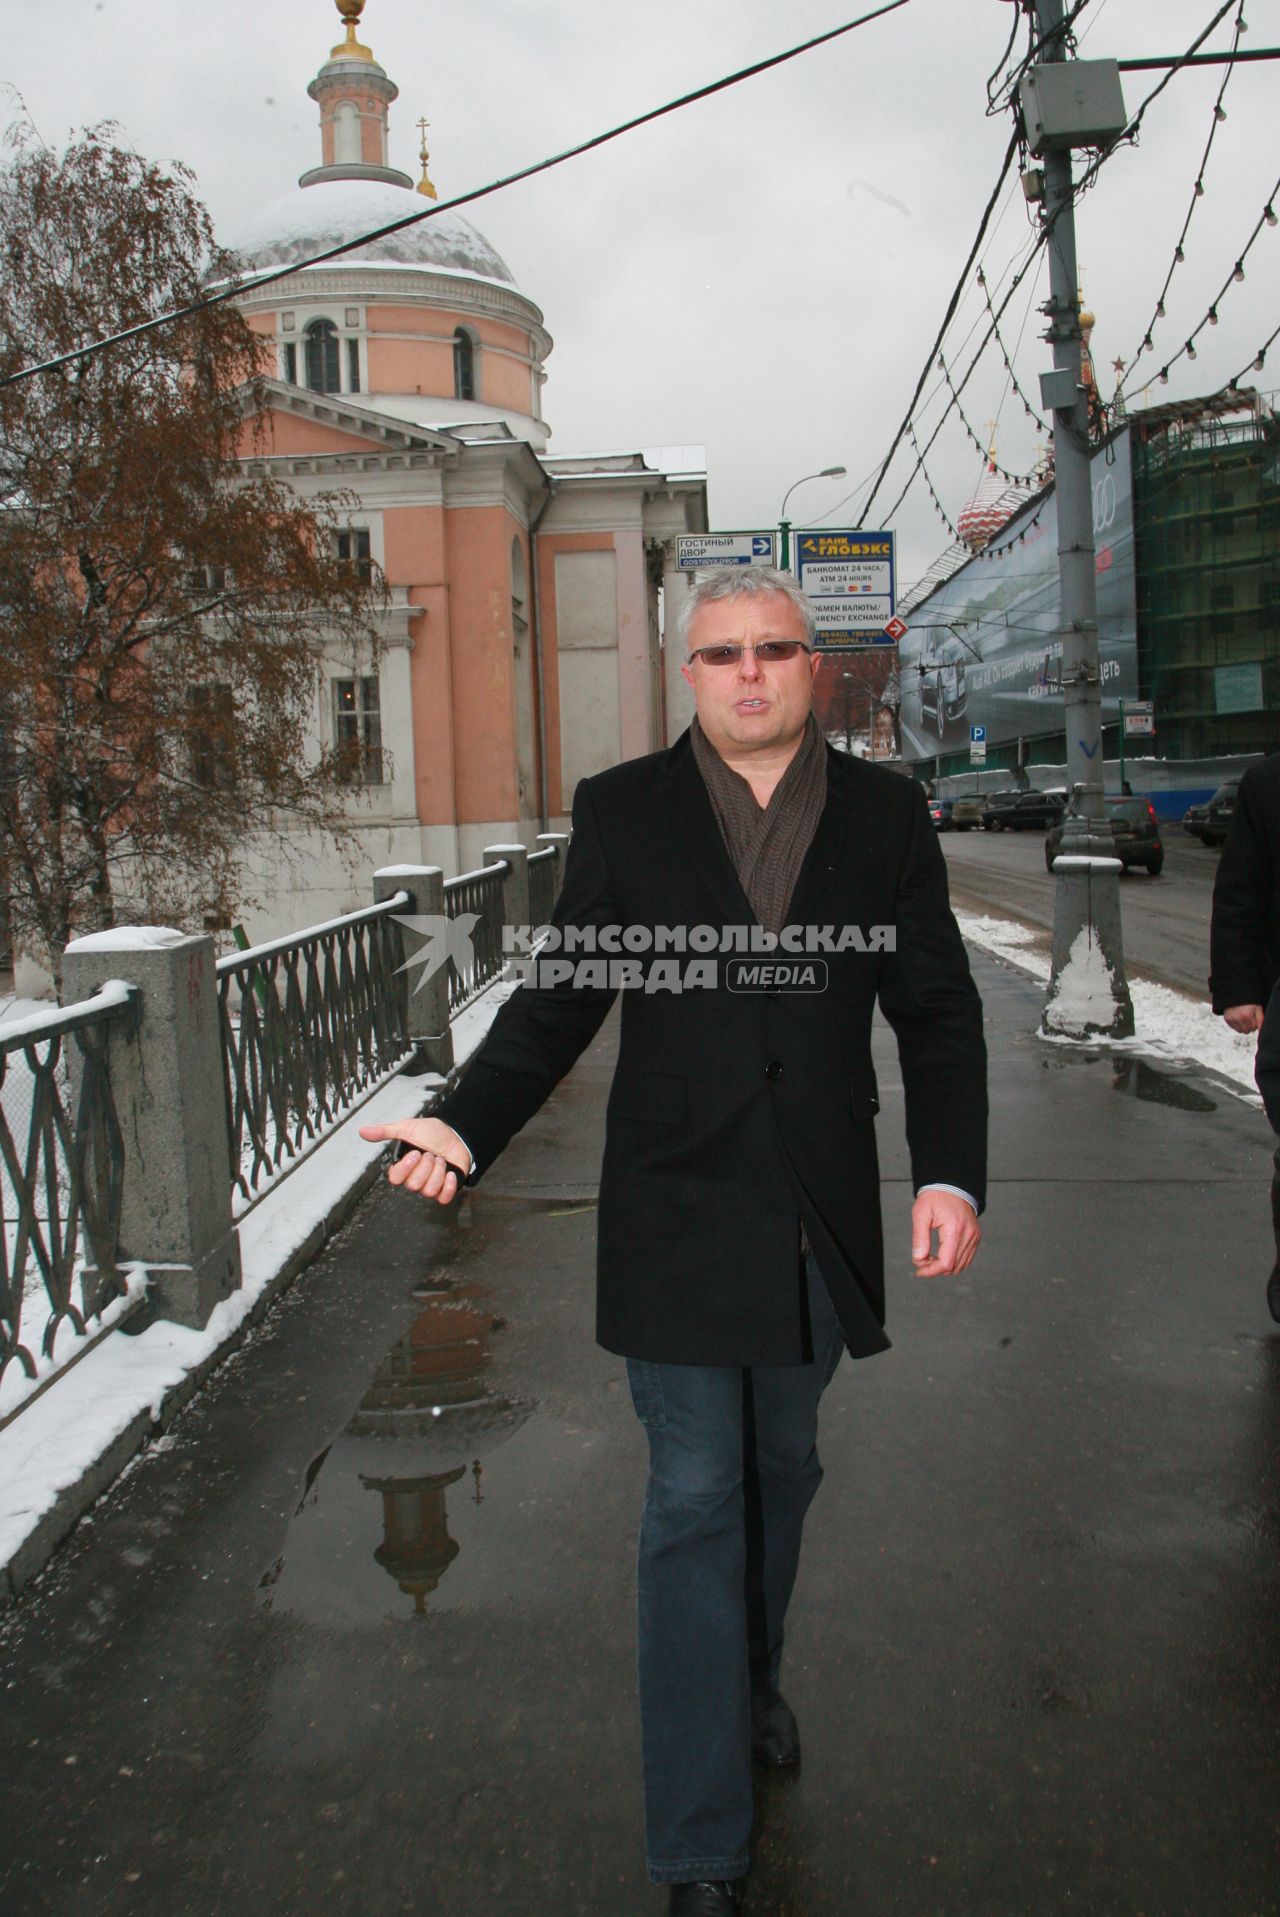 Российский предприниматель, бизнесмен Александр Лебедев недалеко от Кремля. 13 декабря 2007 года.